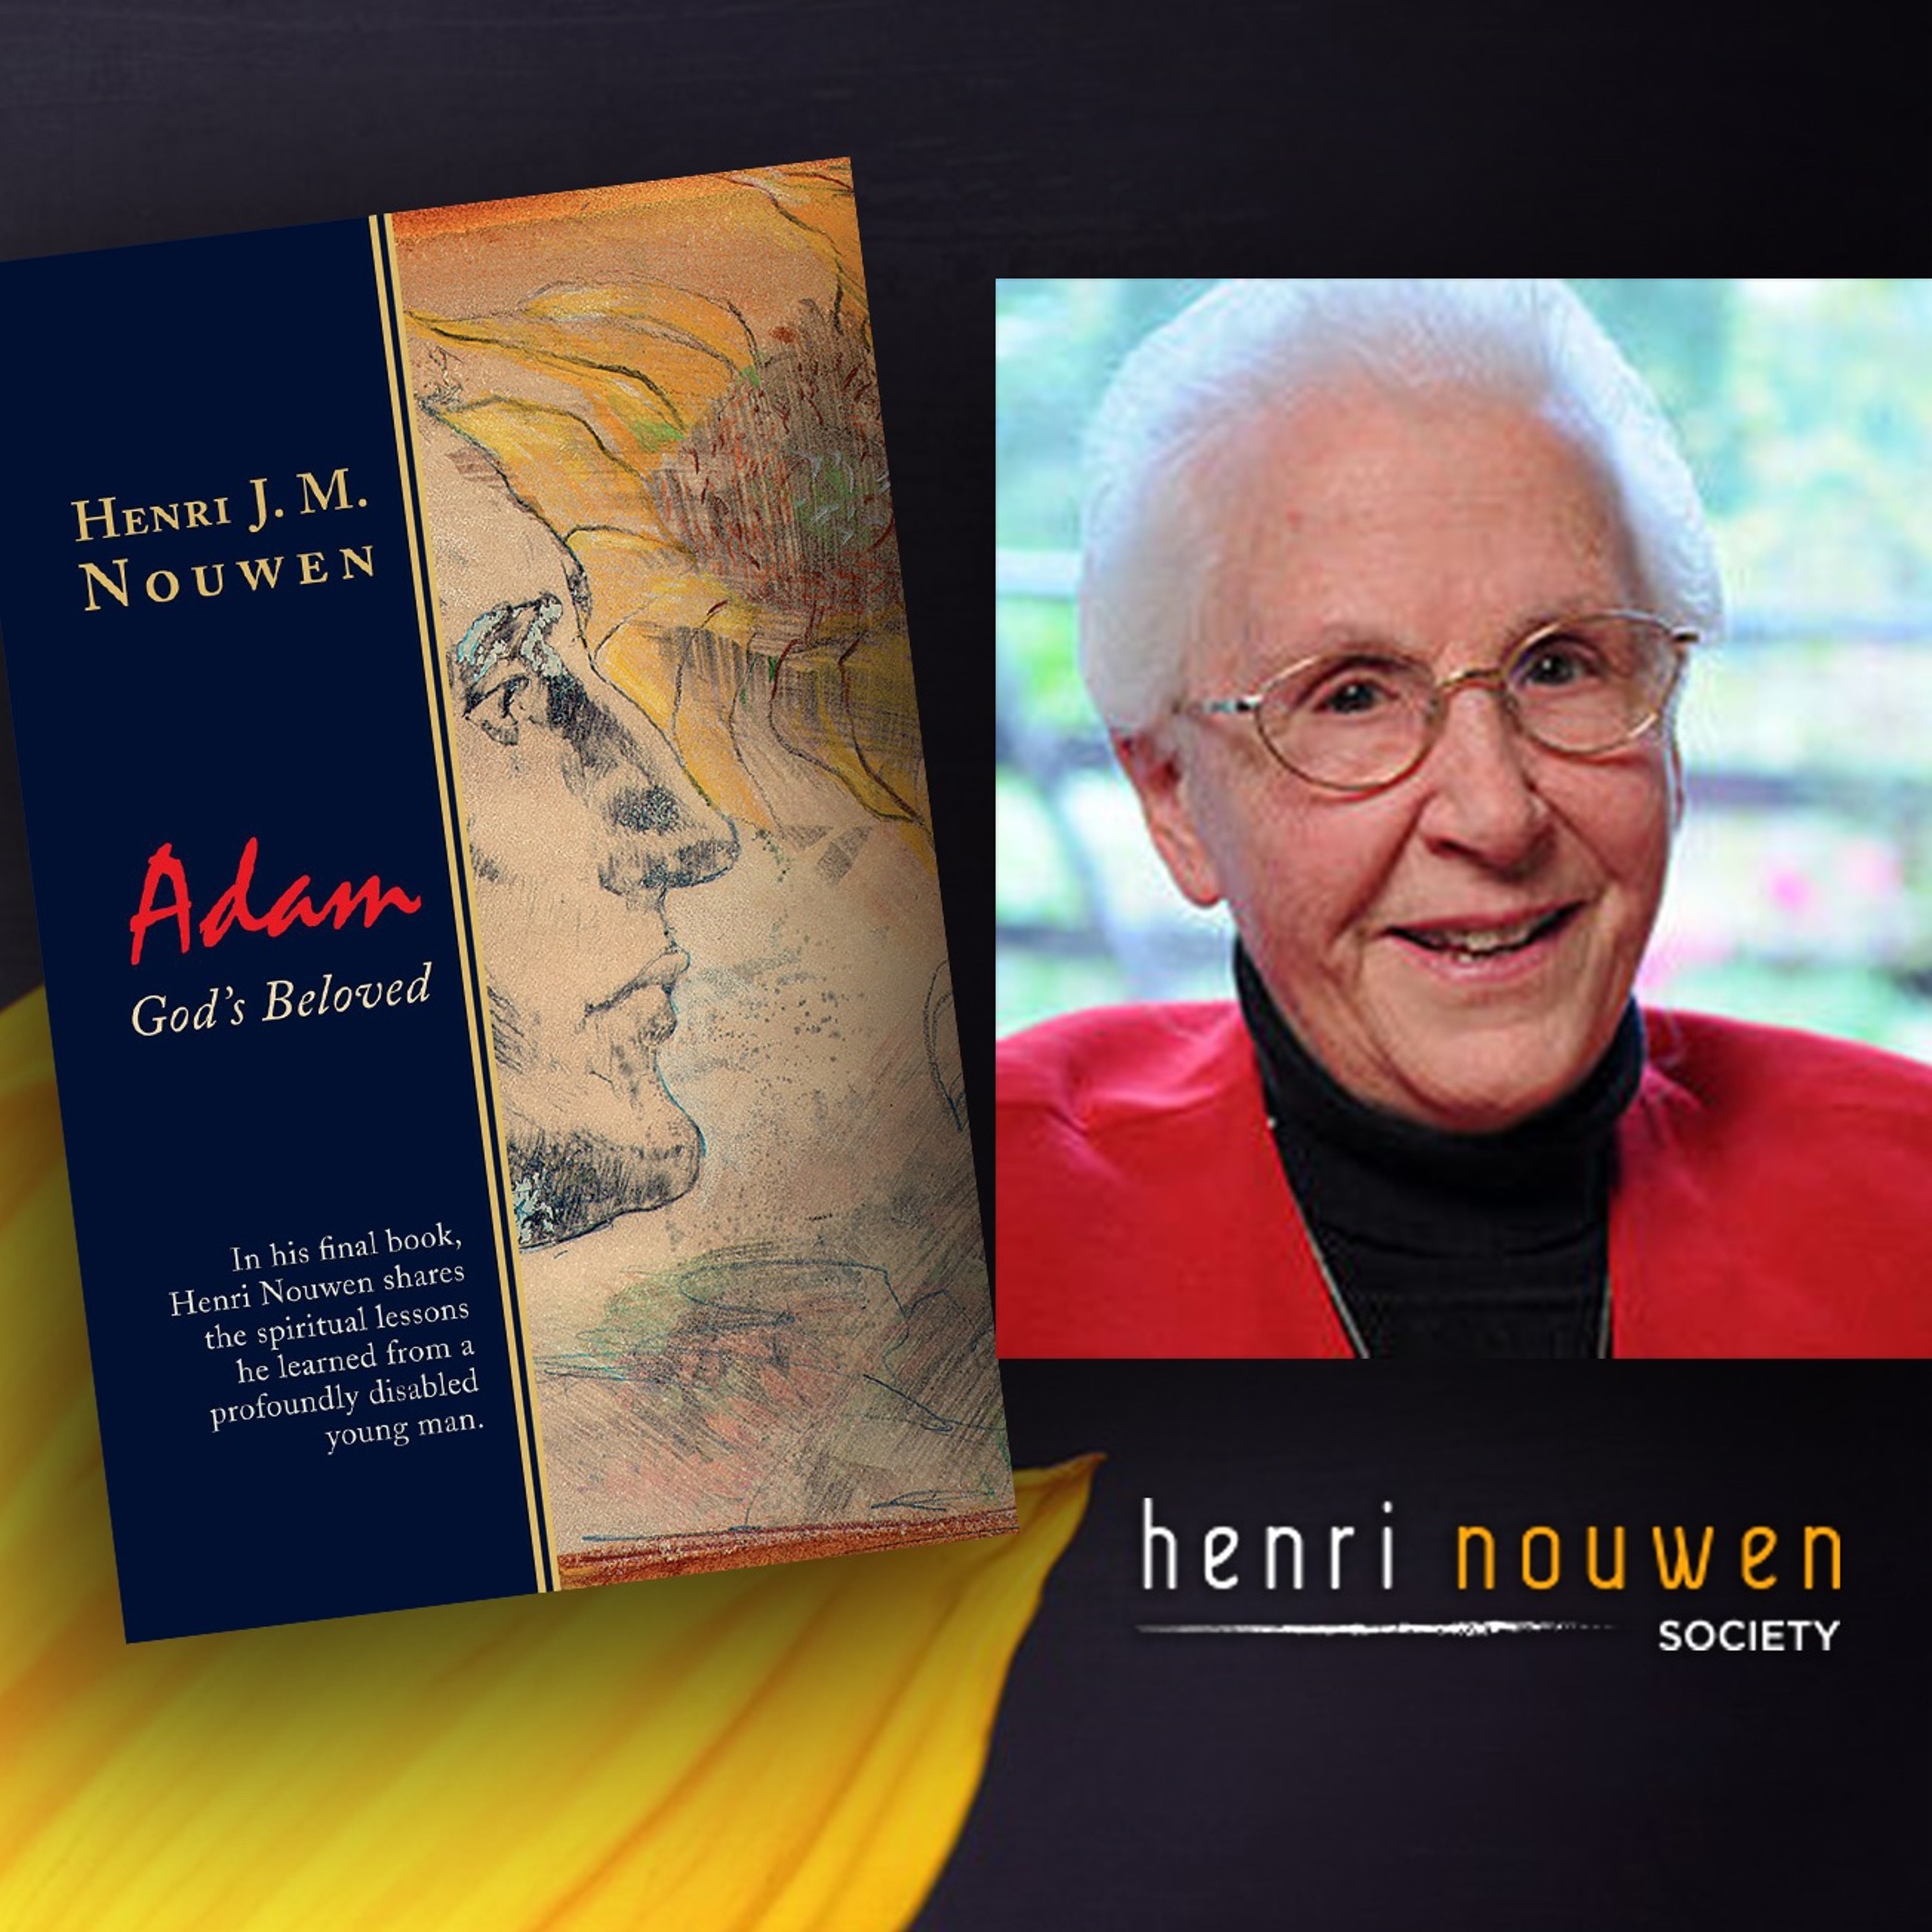 Henri Nouwen, Now & Then | Sr. Sue Mosteller, Henri & Adam